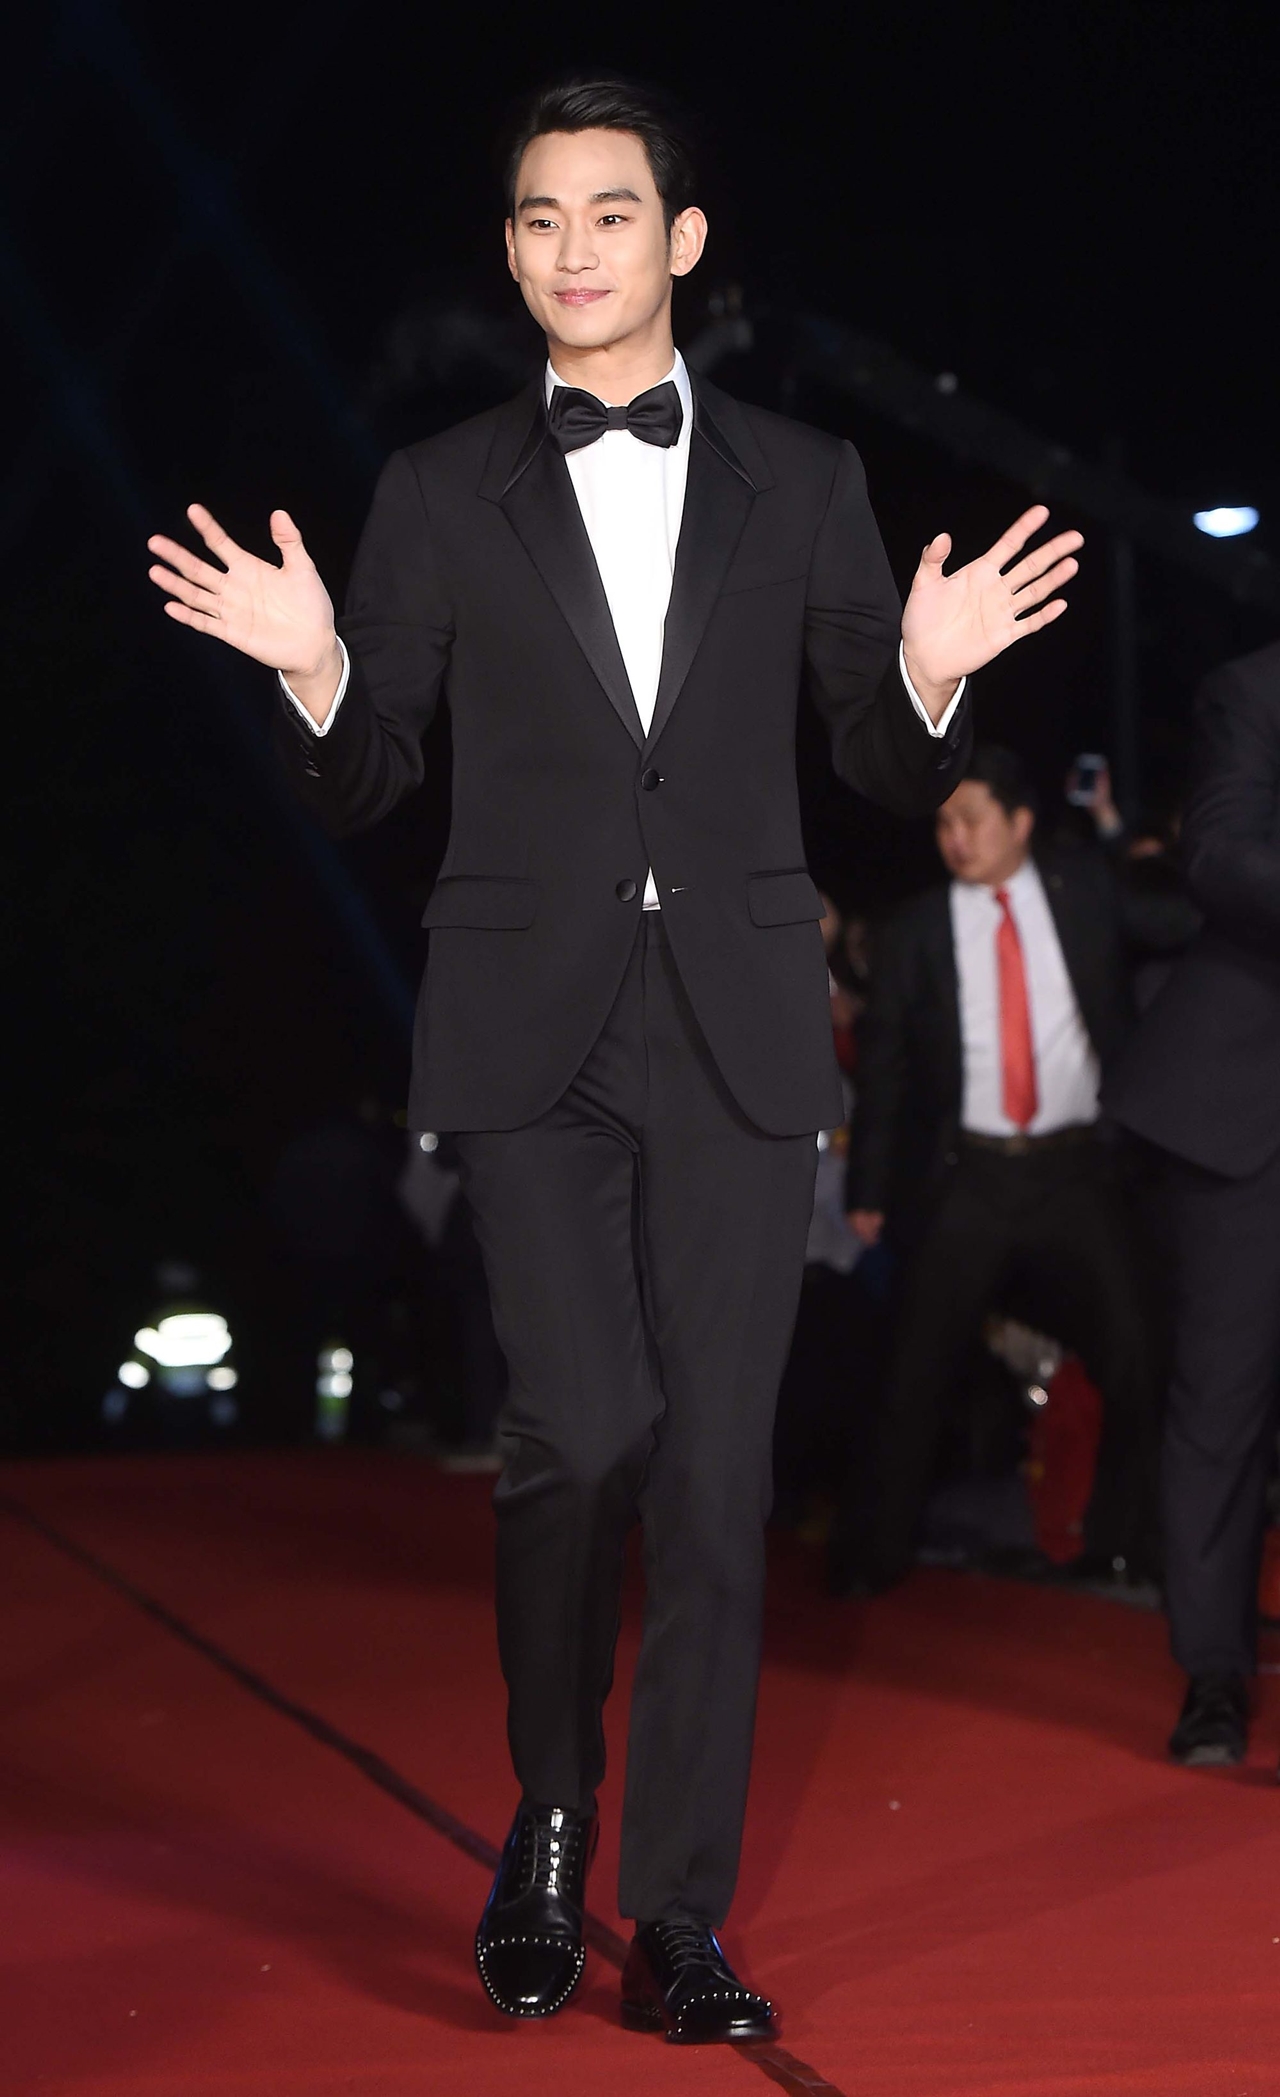 키이스트 “김수현 재계약 논의 중...1인 기획사 설립 들은 바 없다”(공식입장)